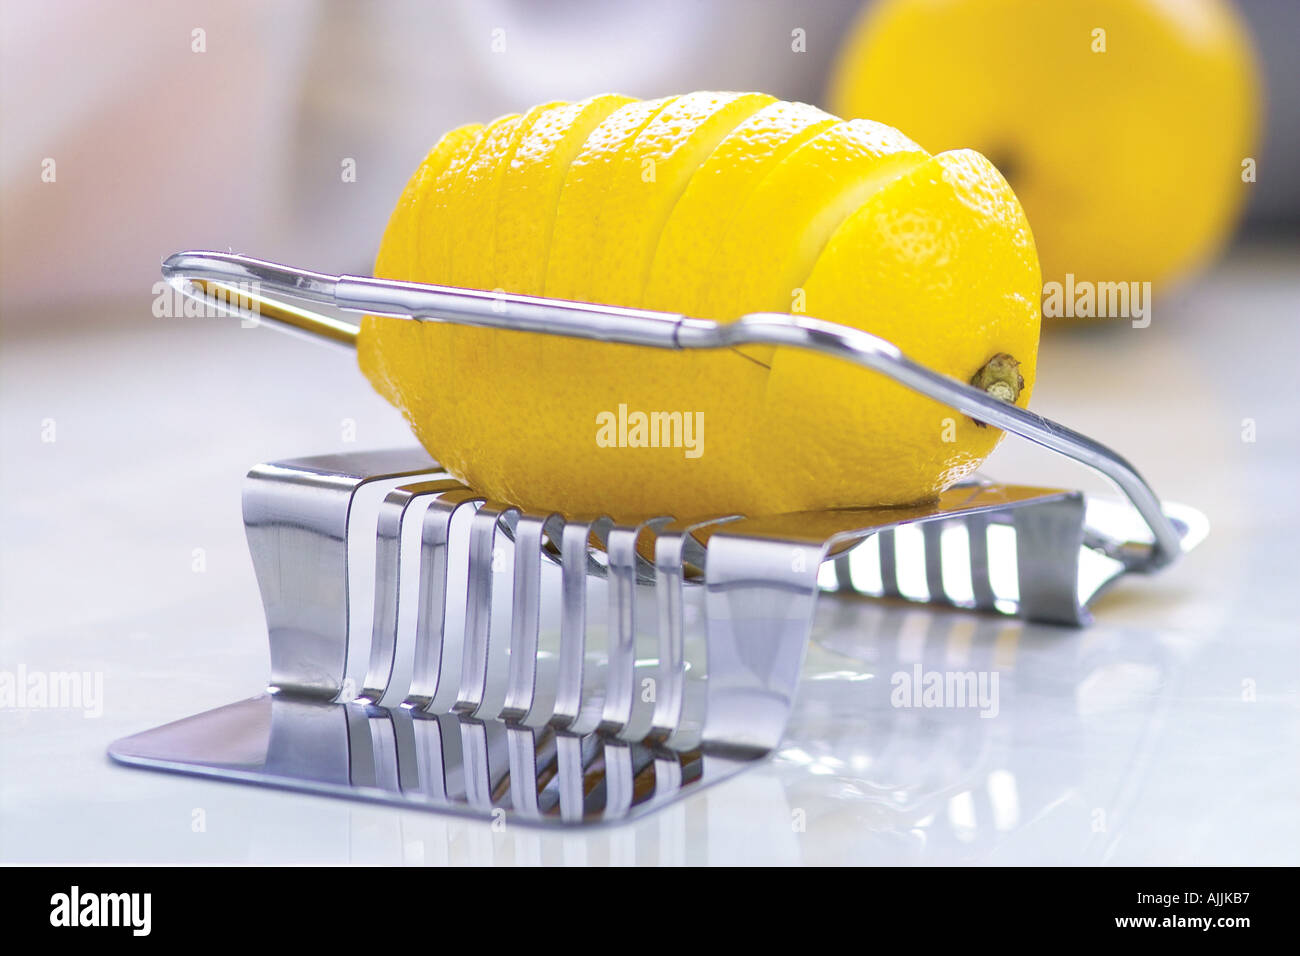 https://c8.alamy.com/comp/AJJKB7/close-up-of-lemon-in-a-slicer-AJJKB7.jpg